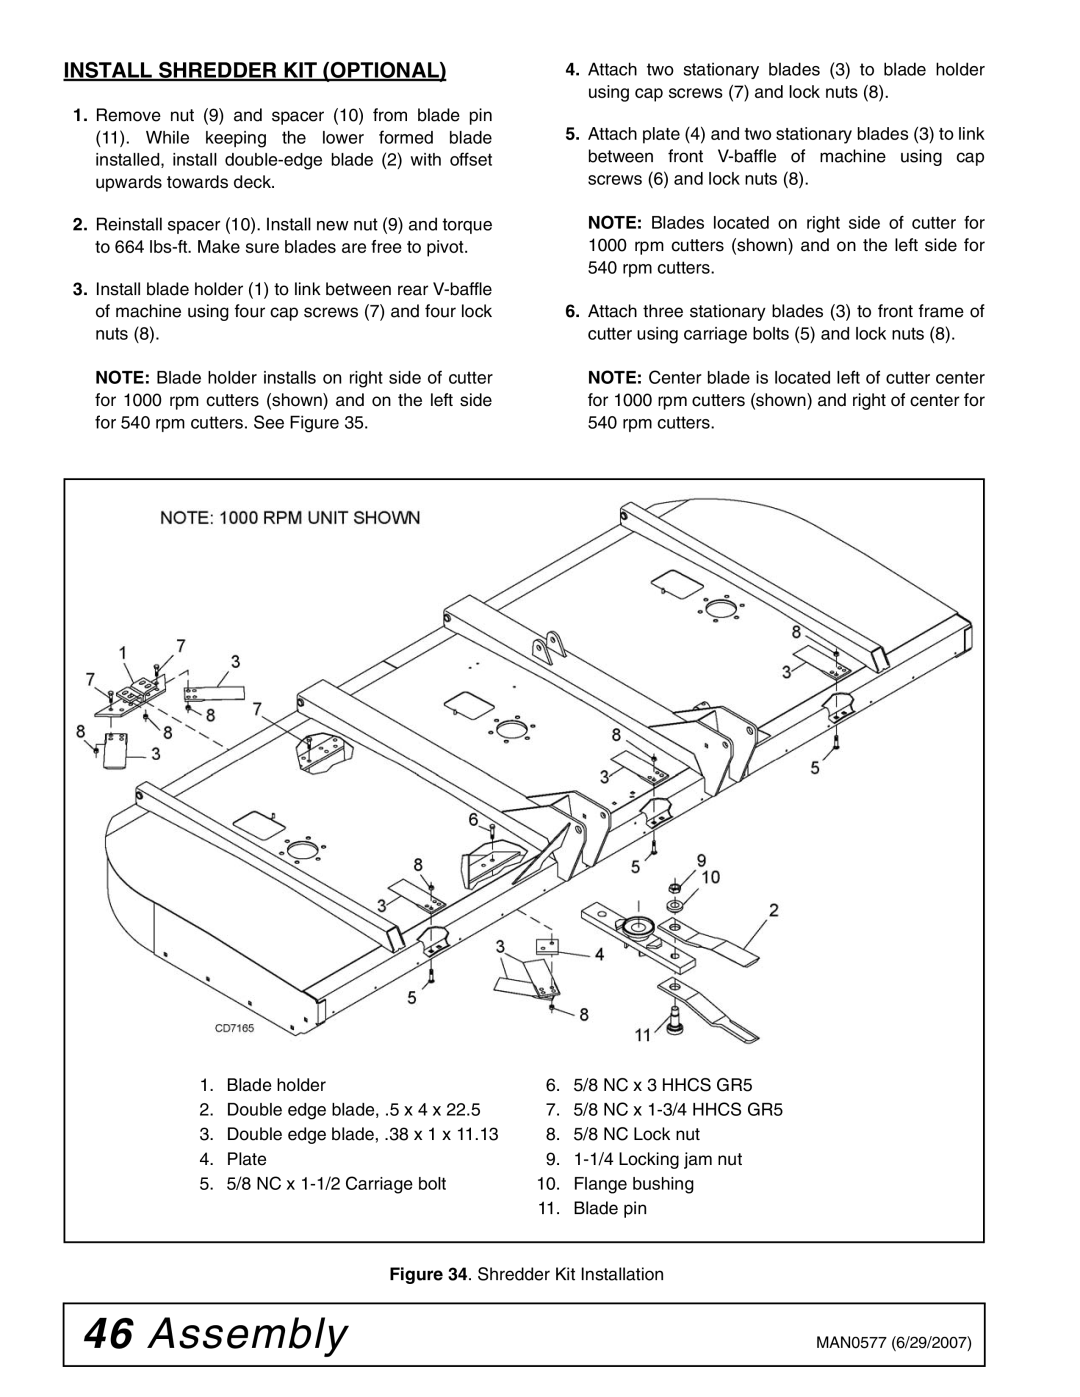 Woods Equipment TS1680Q manual Install Shredder KIT Optional, Shredder Kit Installation 